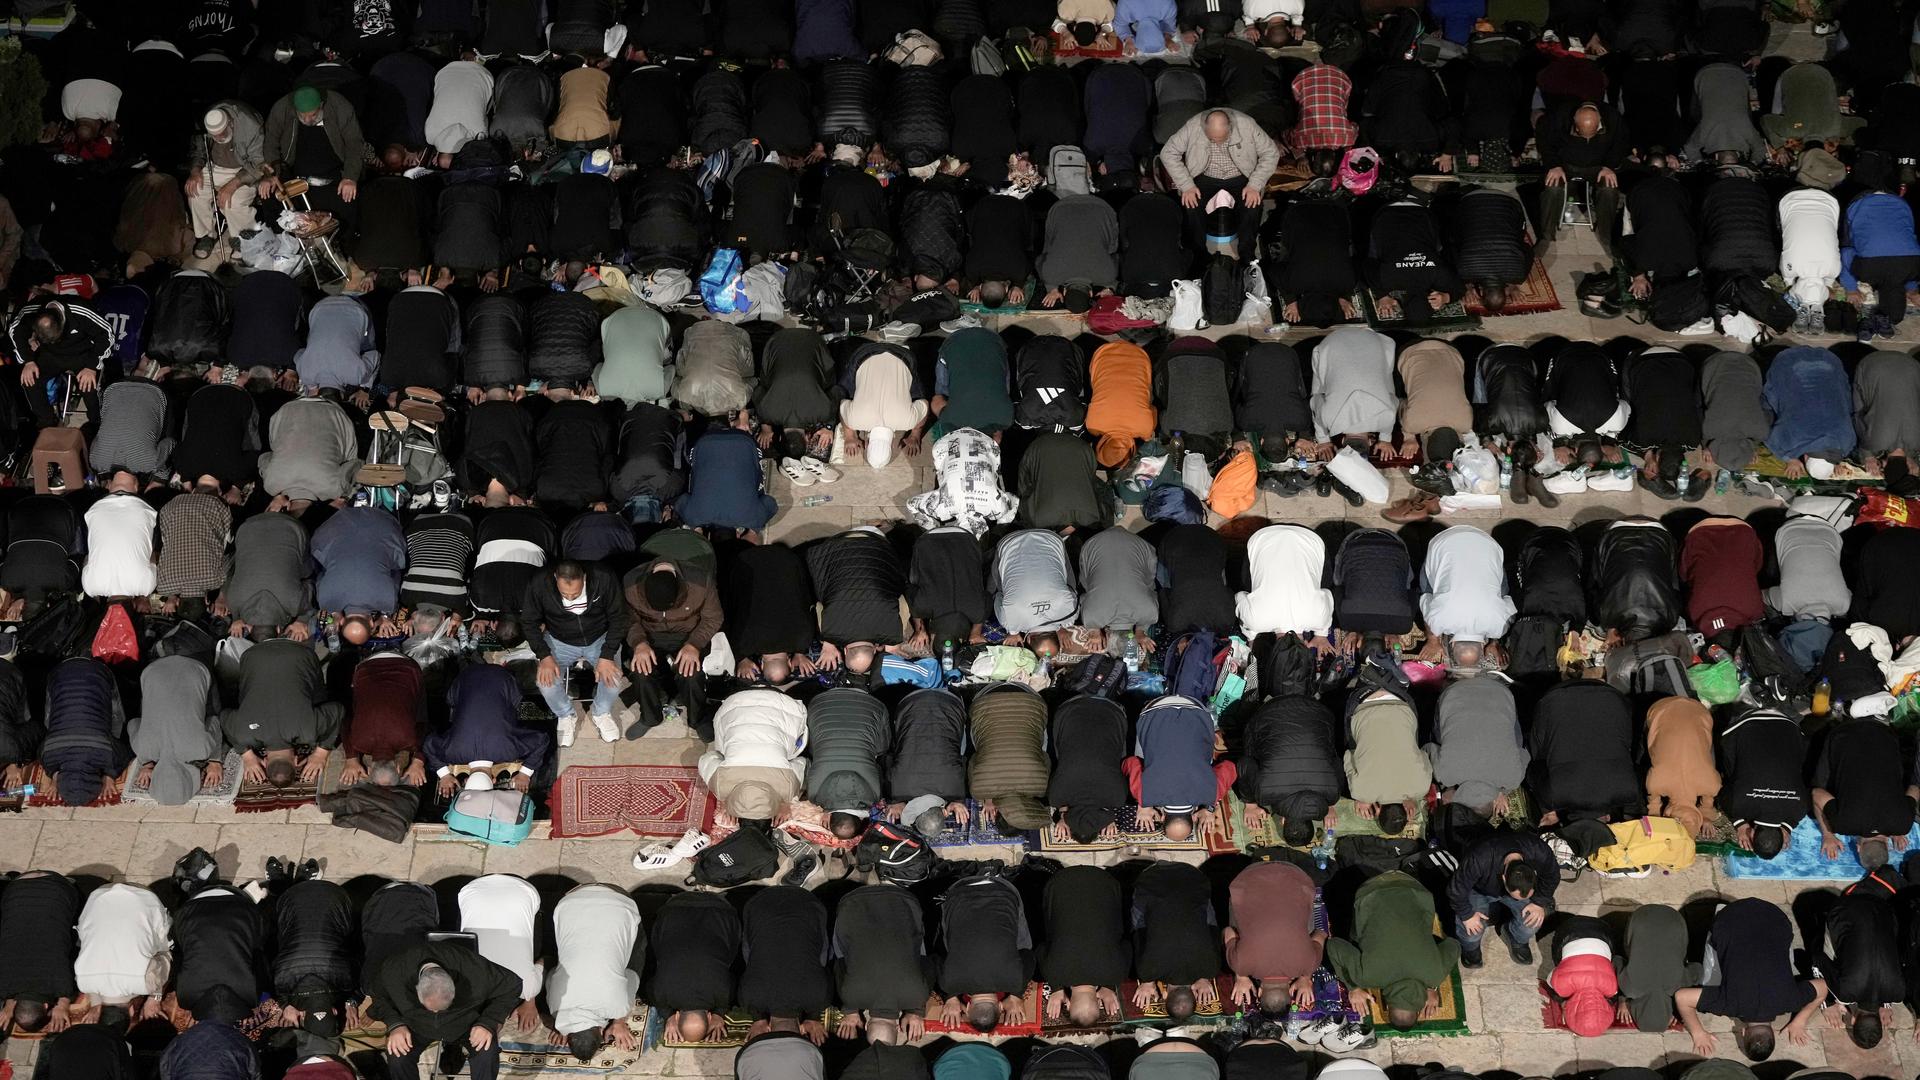 Rows of people kneeling in prayer